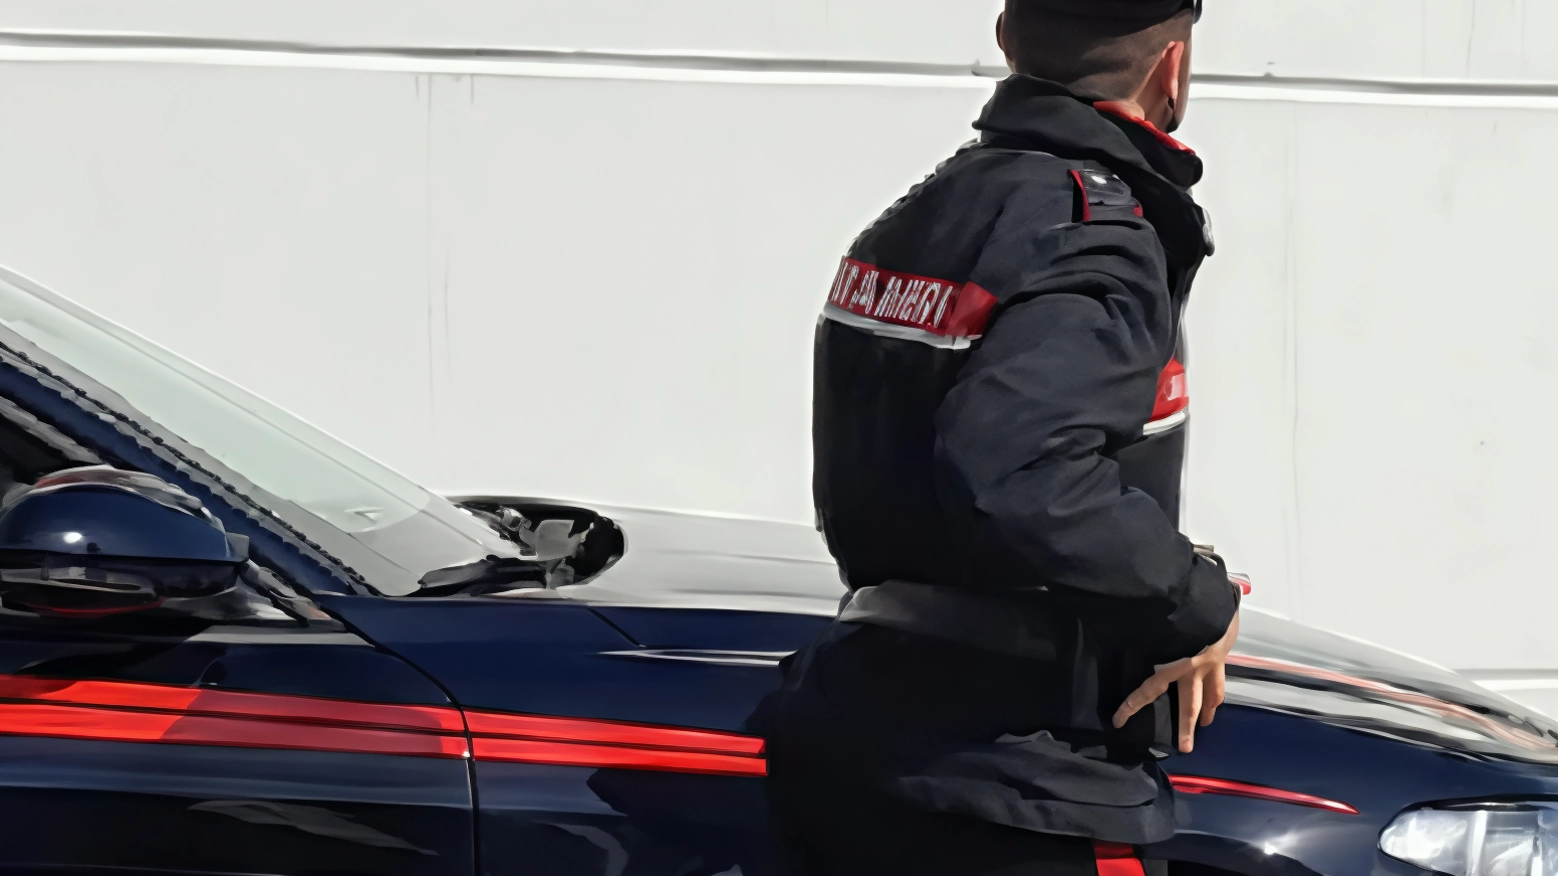 Carabiniera umiliata. La decisione dell’Arma: l’ufficiale sarà trasferito. I sindacati: "Non basta"